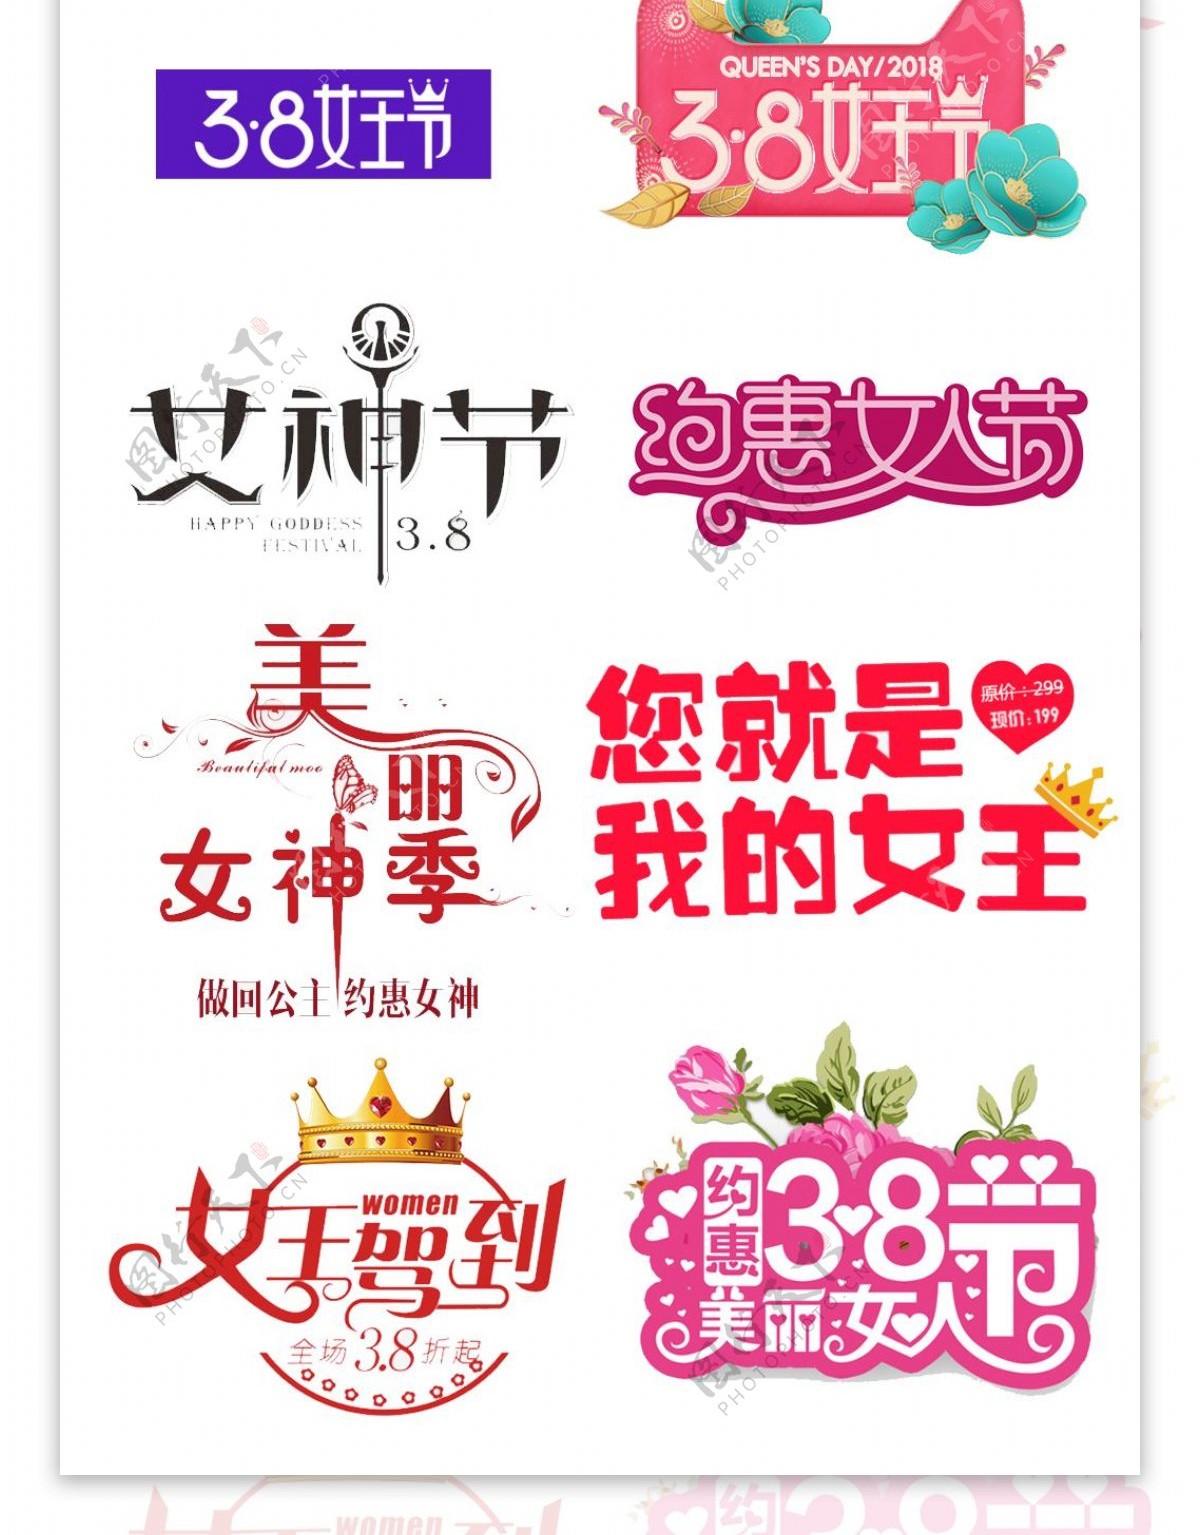 天猫淘宝38女王节logo免费下载